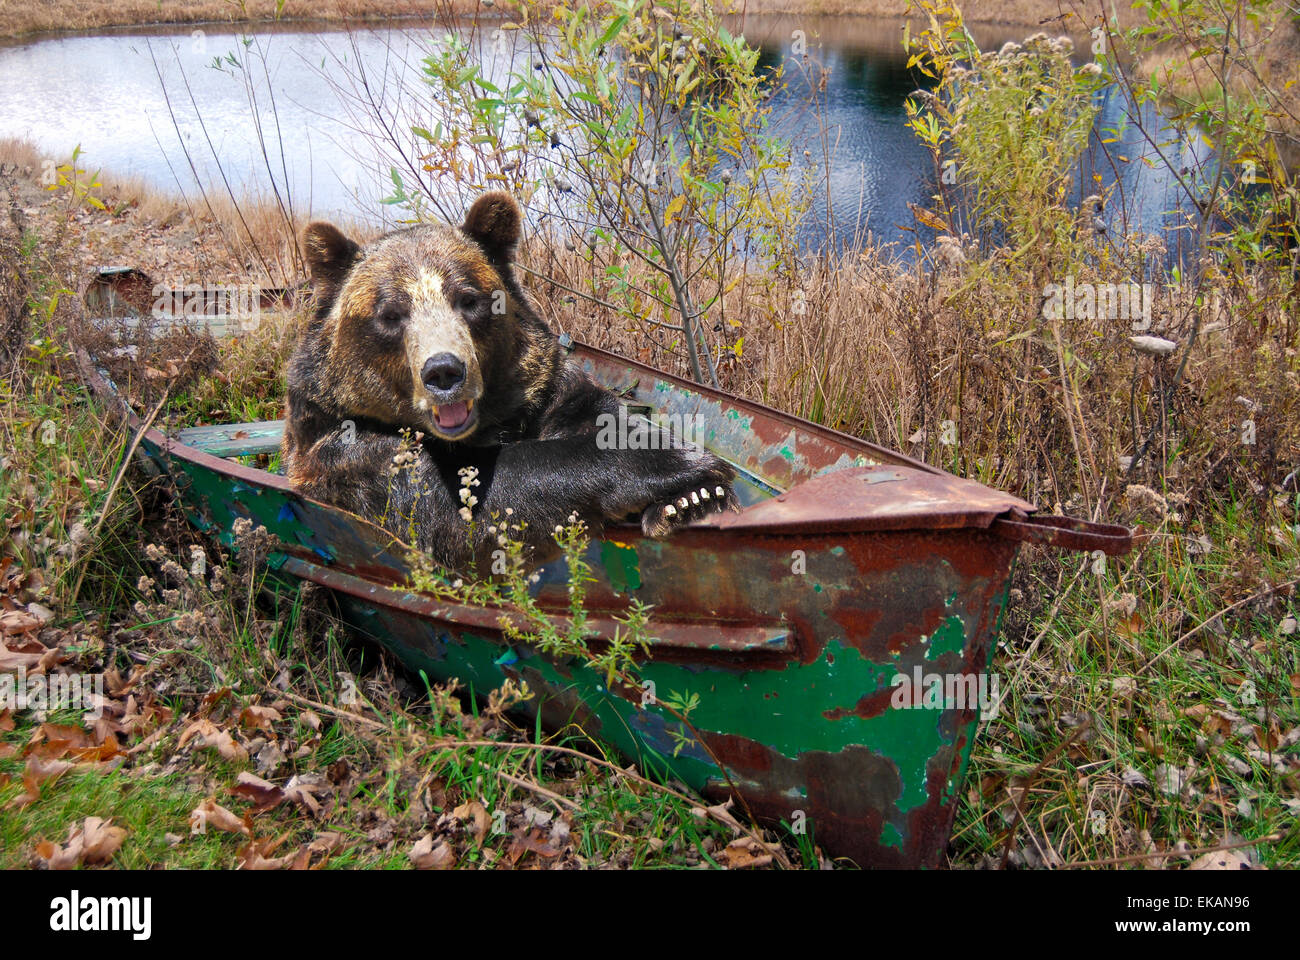 Wilden Bären in einem rostigen Ruderboot in Unkraut. Stockfoto